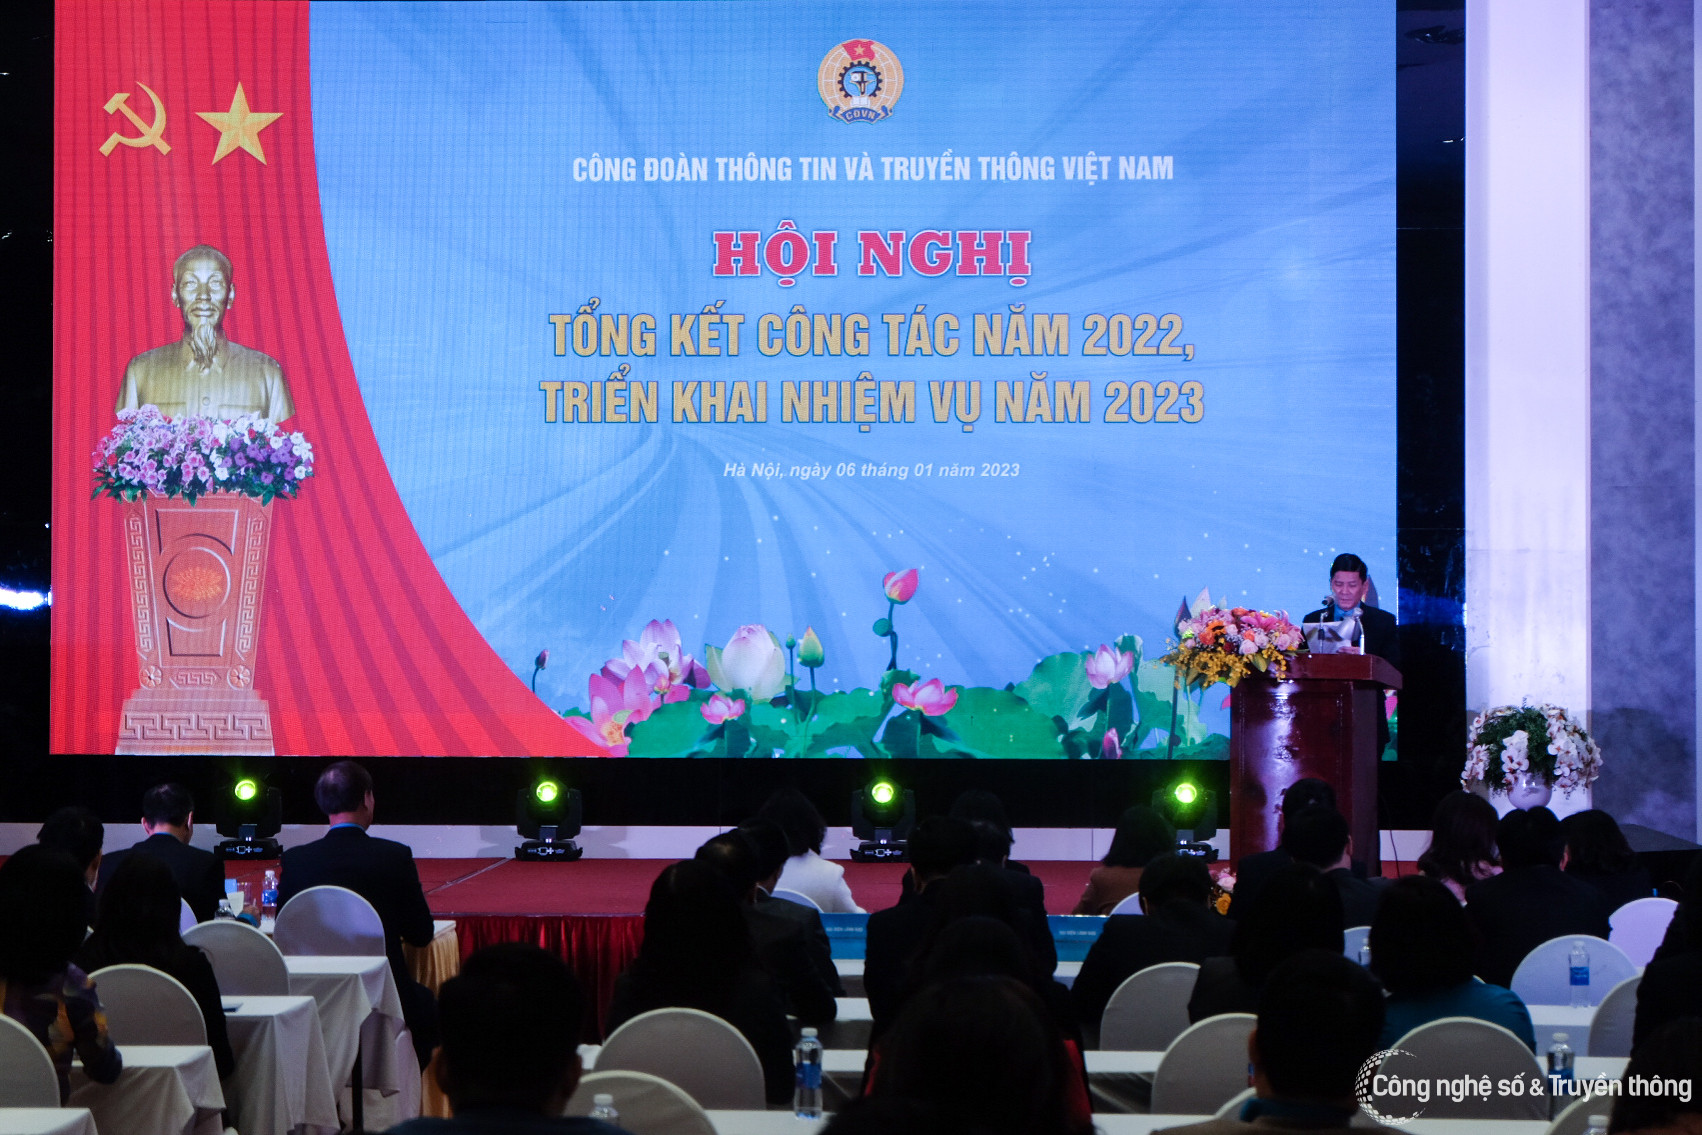 Hội nghị Tổng kết công tác năm 2022 và triển khai nhiệm vụ năm 2023 của Công đoàn Thông tin & Truyền thông Việt Nam